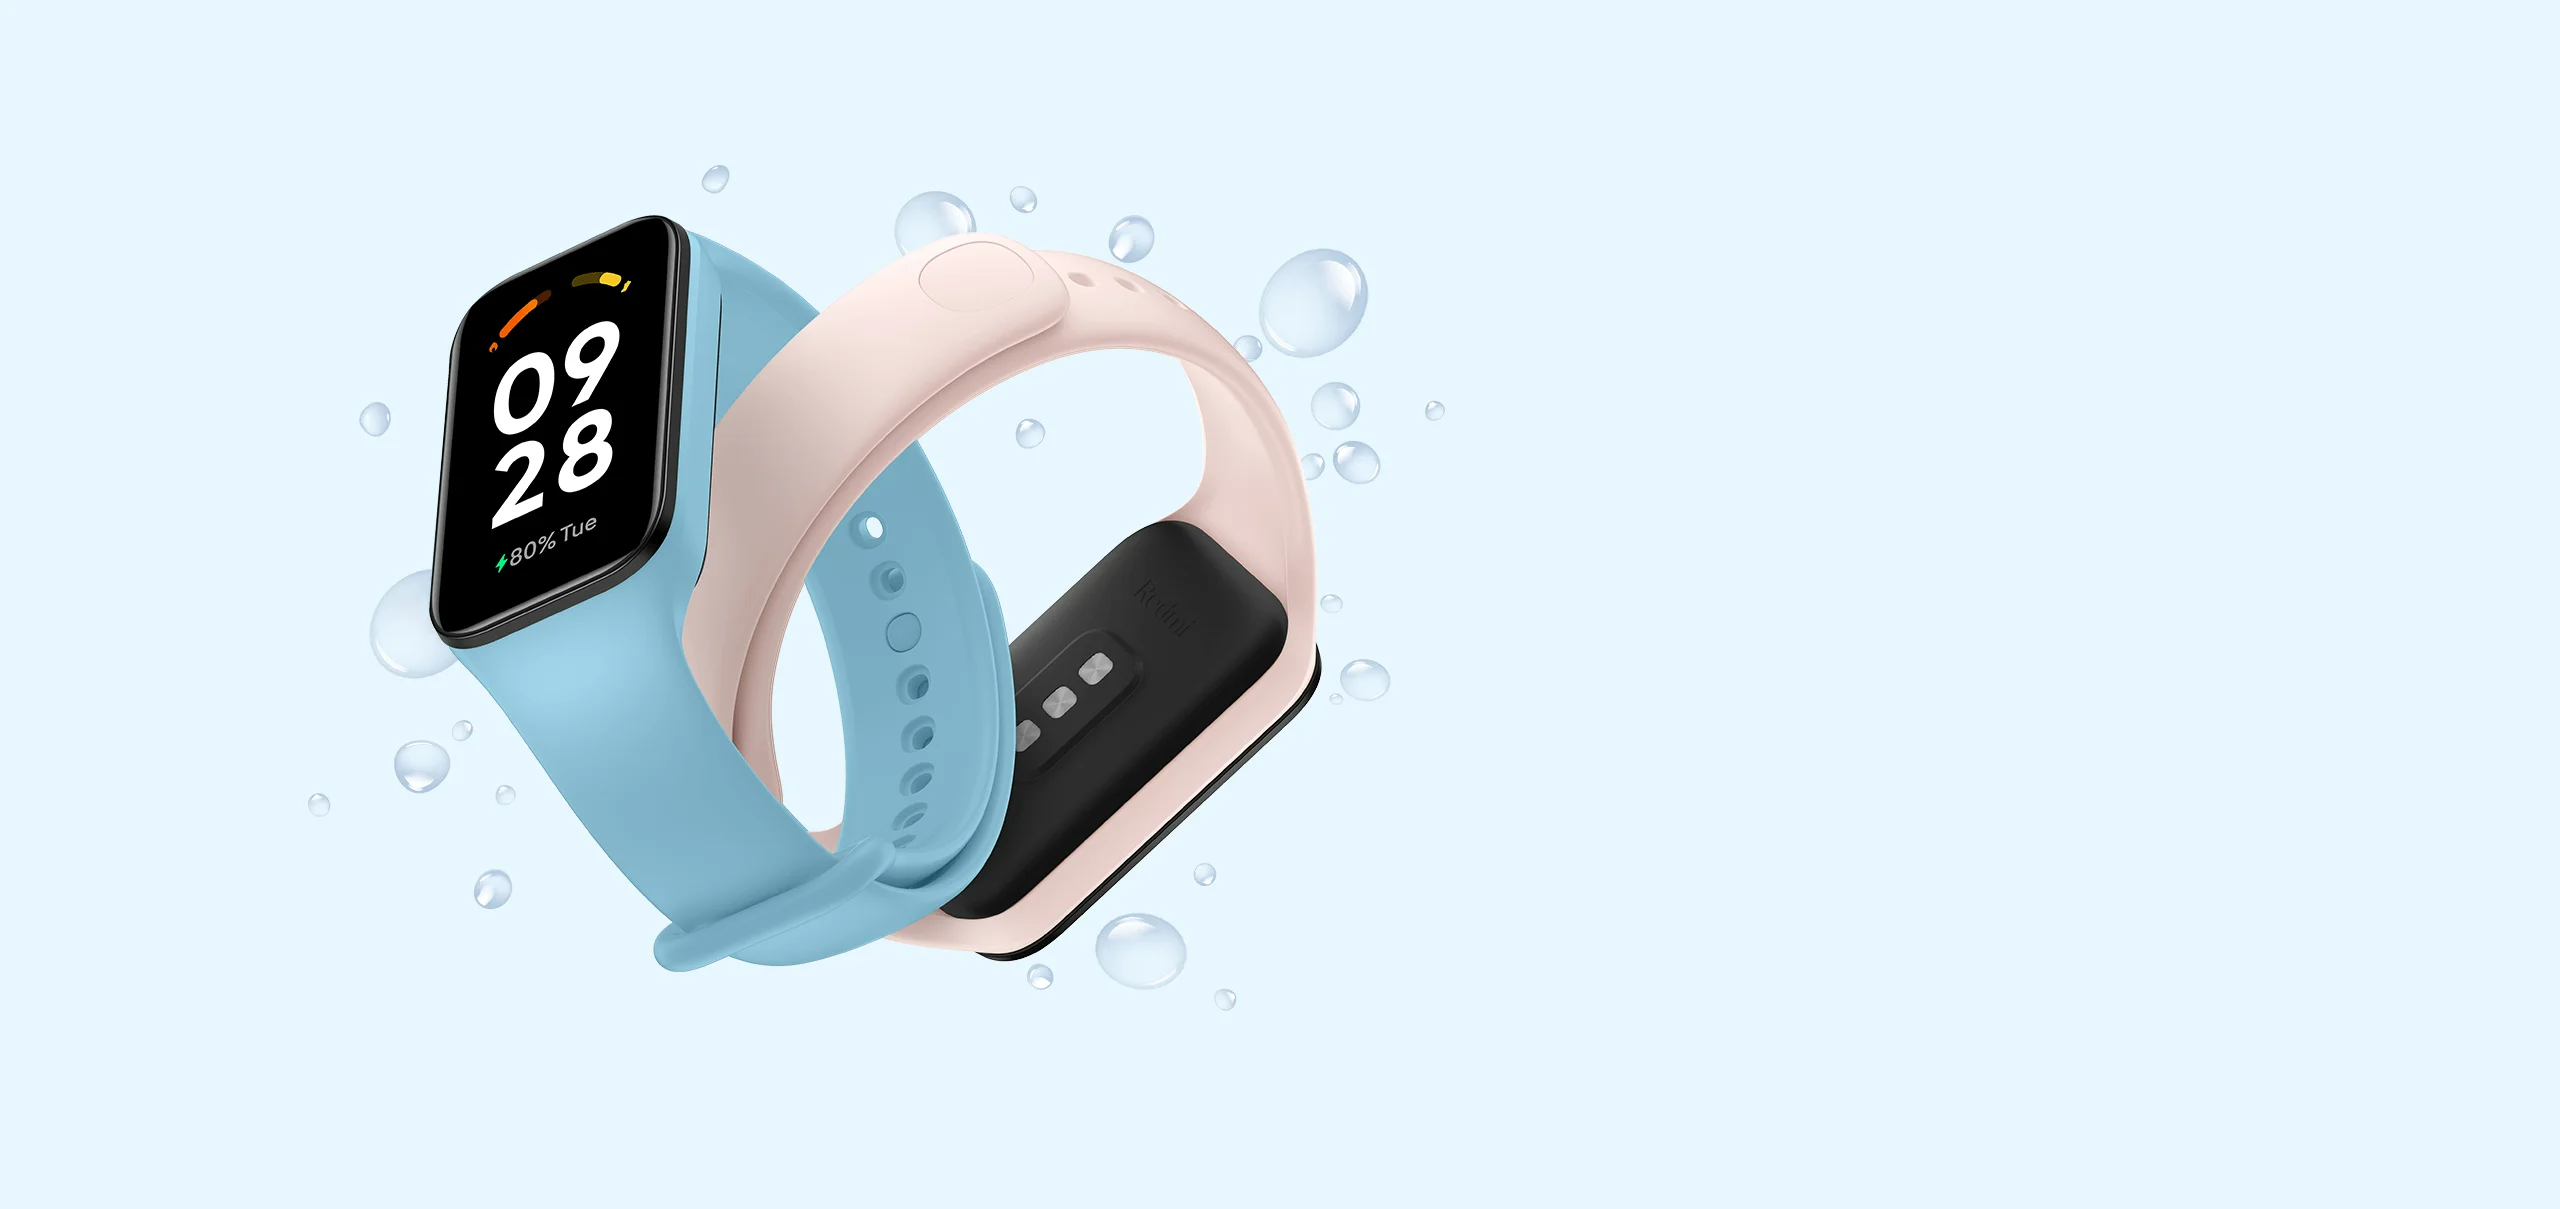 Redmi Smart Band 2 ra mắt với thiết kế mỏng nhẹ thời trang và hơn 100 mặt đồng hồ, giá 790,000 VND